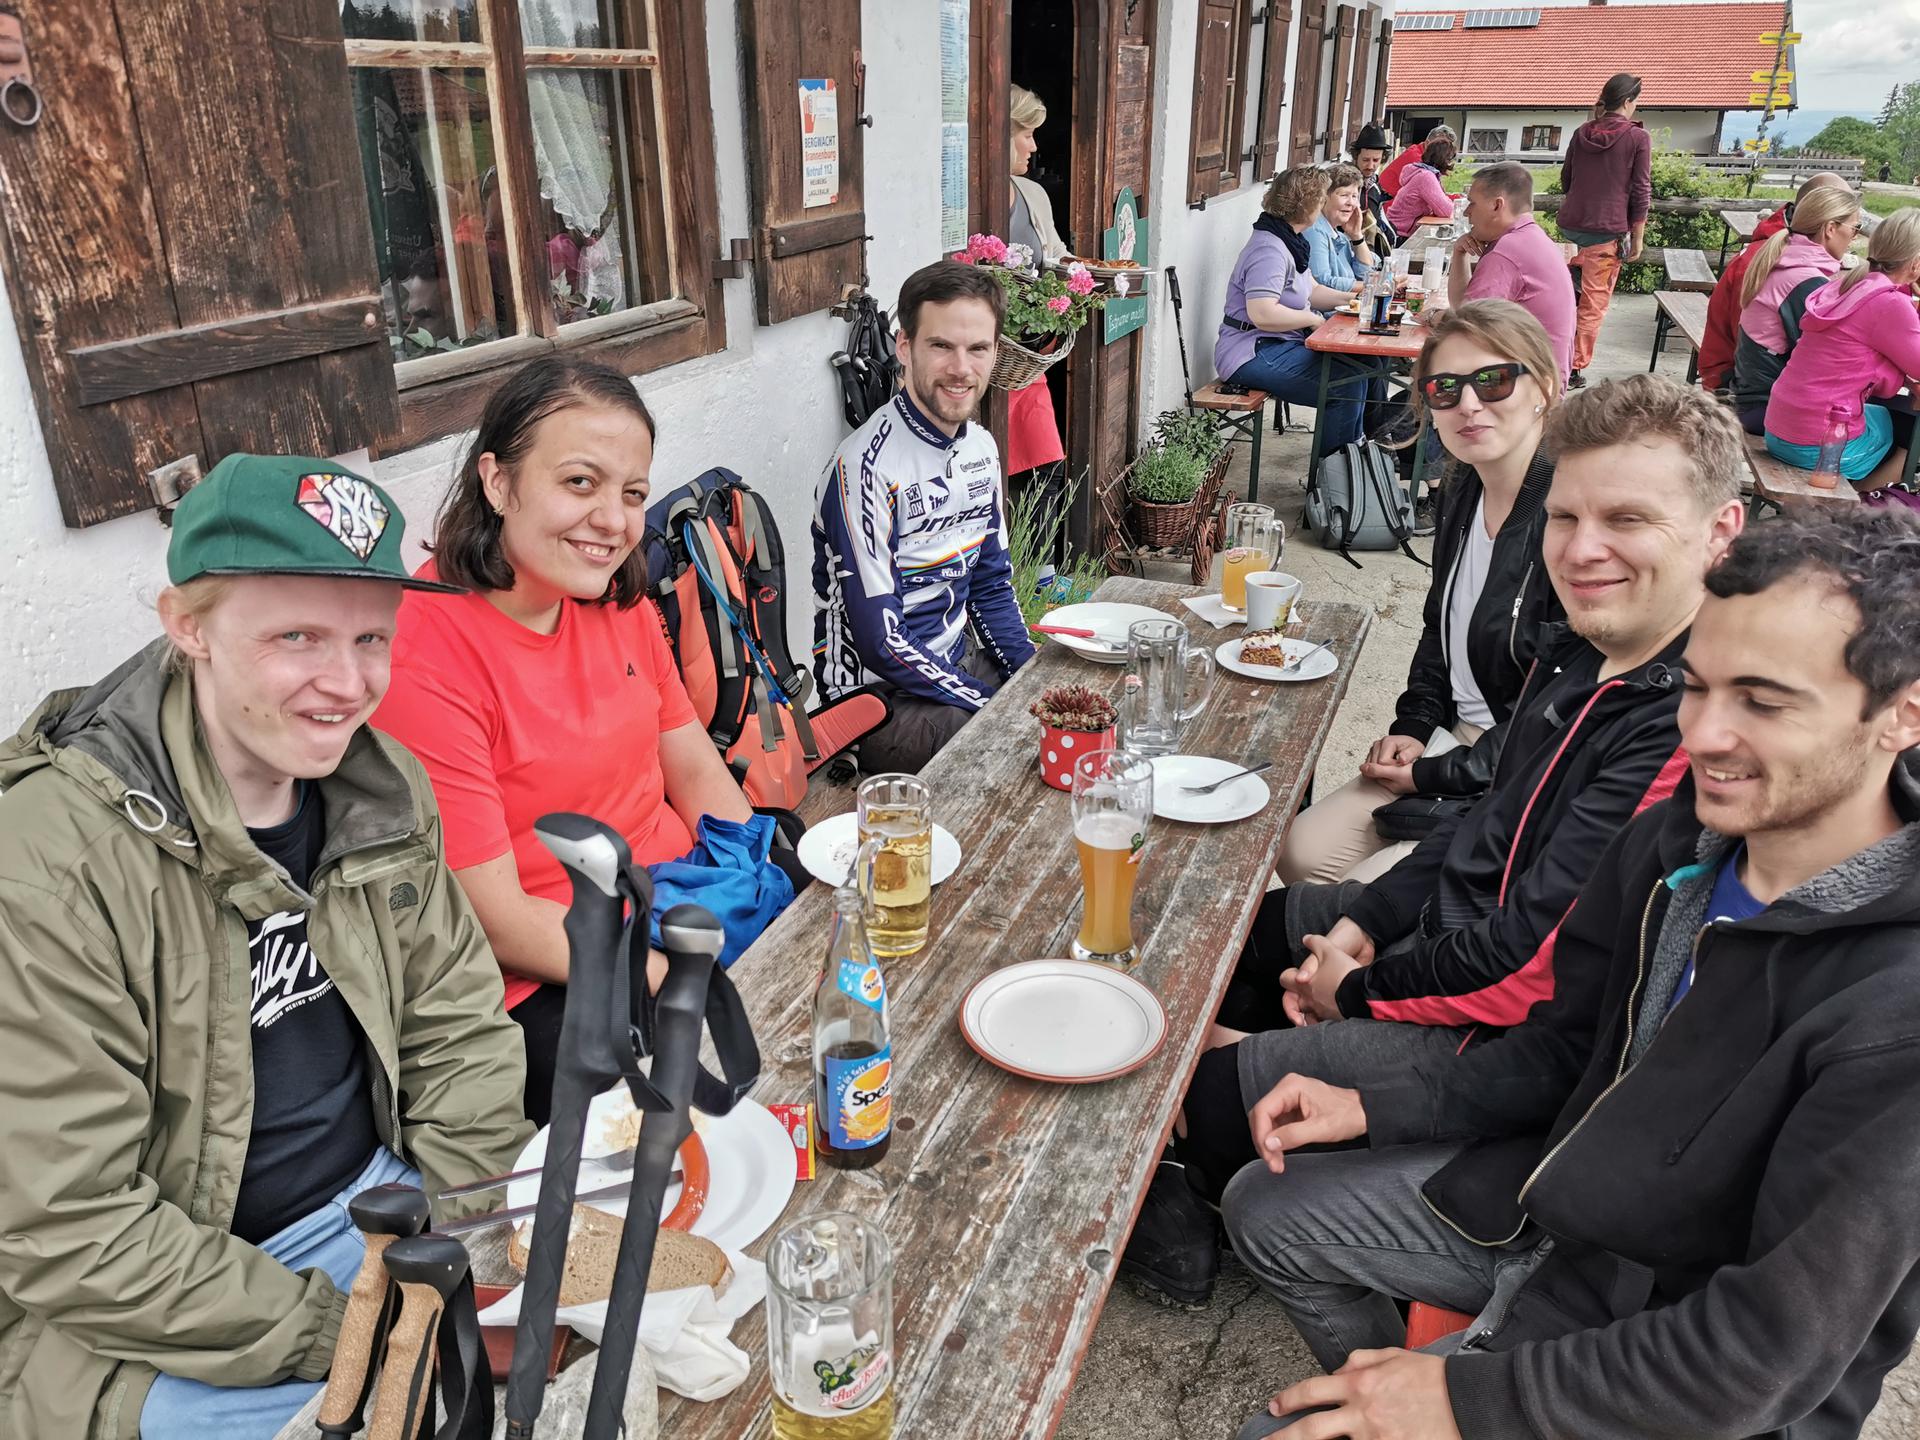 6 Personen aus der Gruppe sitzen an einer Biergarnitur vor der Lagler Hütte. Auf dem Tisch sind Teller mit Kuchen oder Brotzeit (teilweise bereits leer) und Bier, Limo und Heißgetränke zu sehen. Die Hütte ist gut besucht.